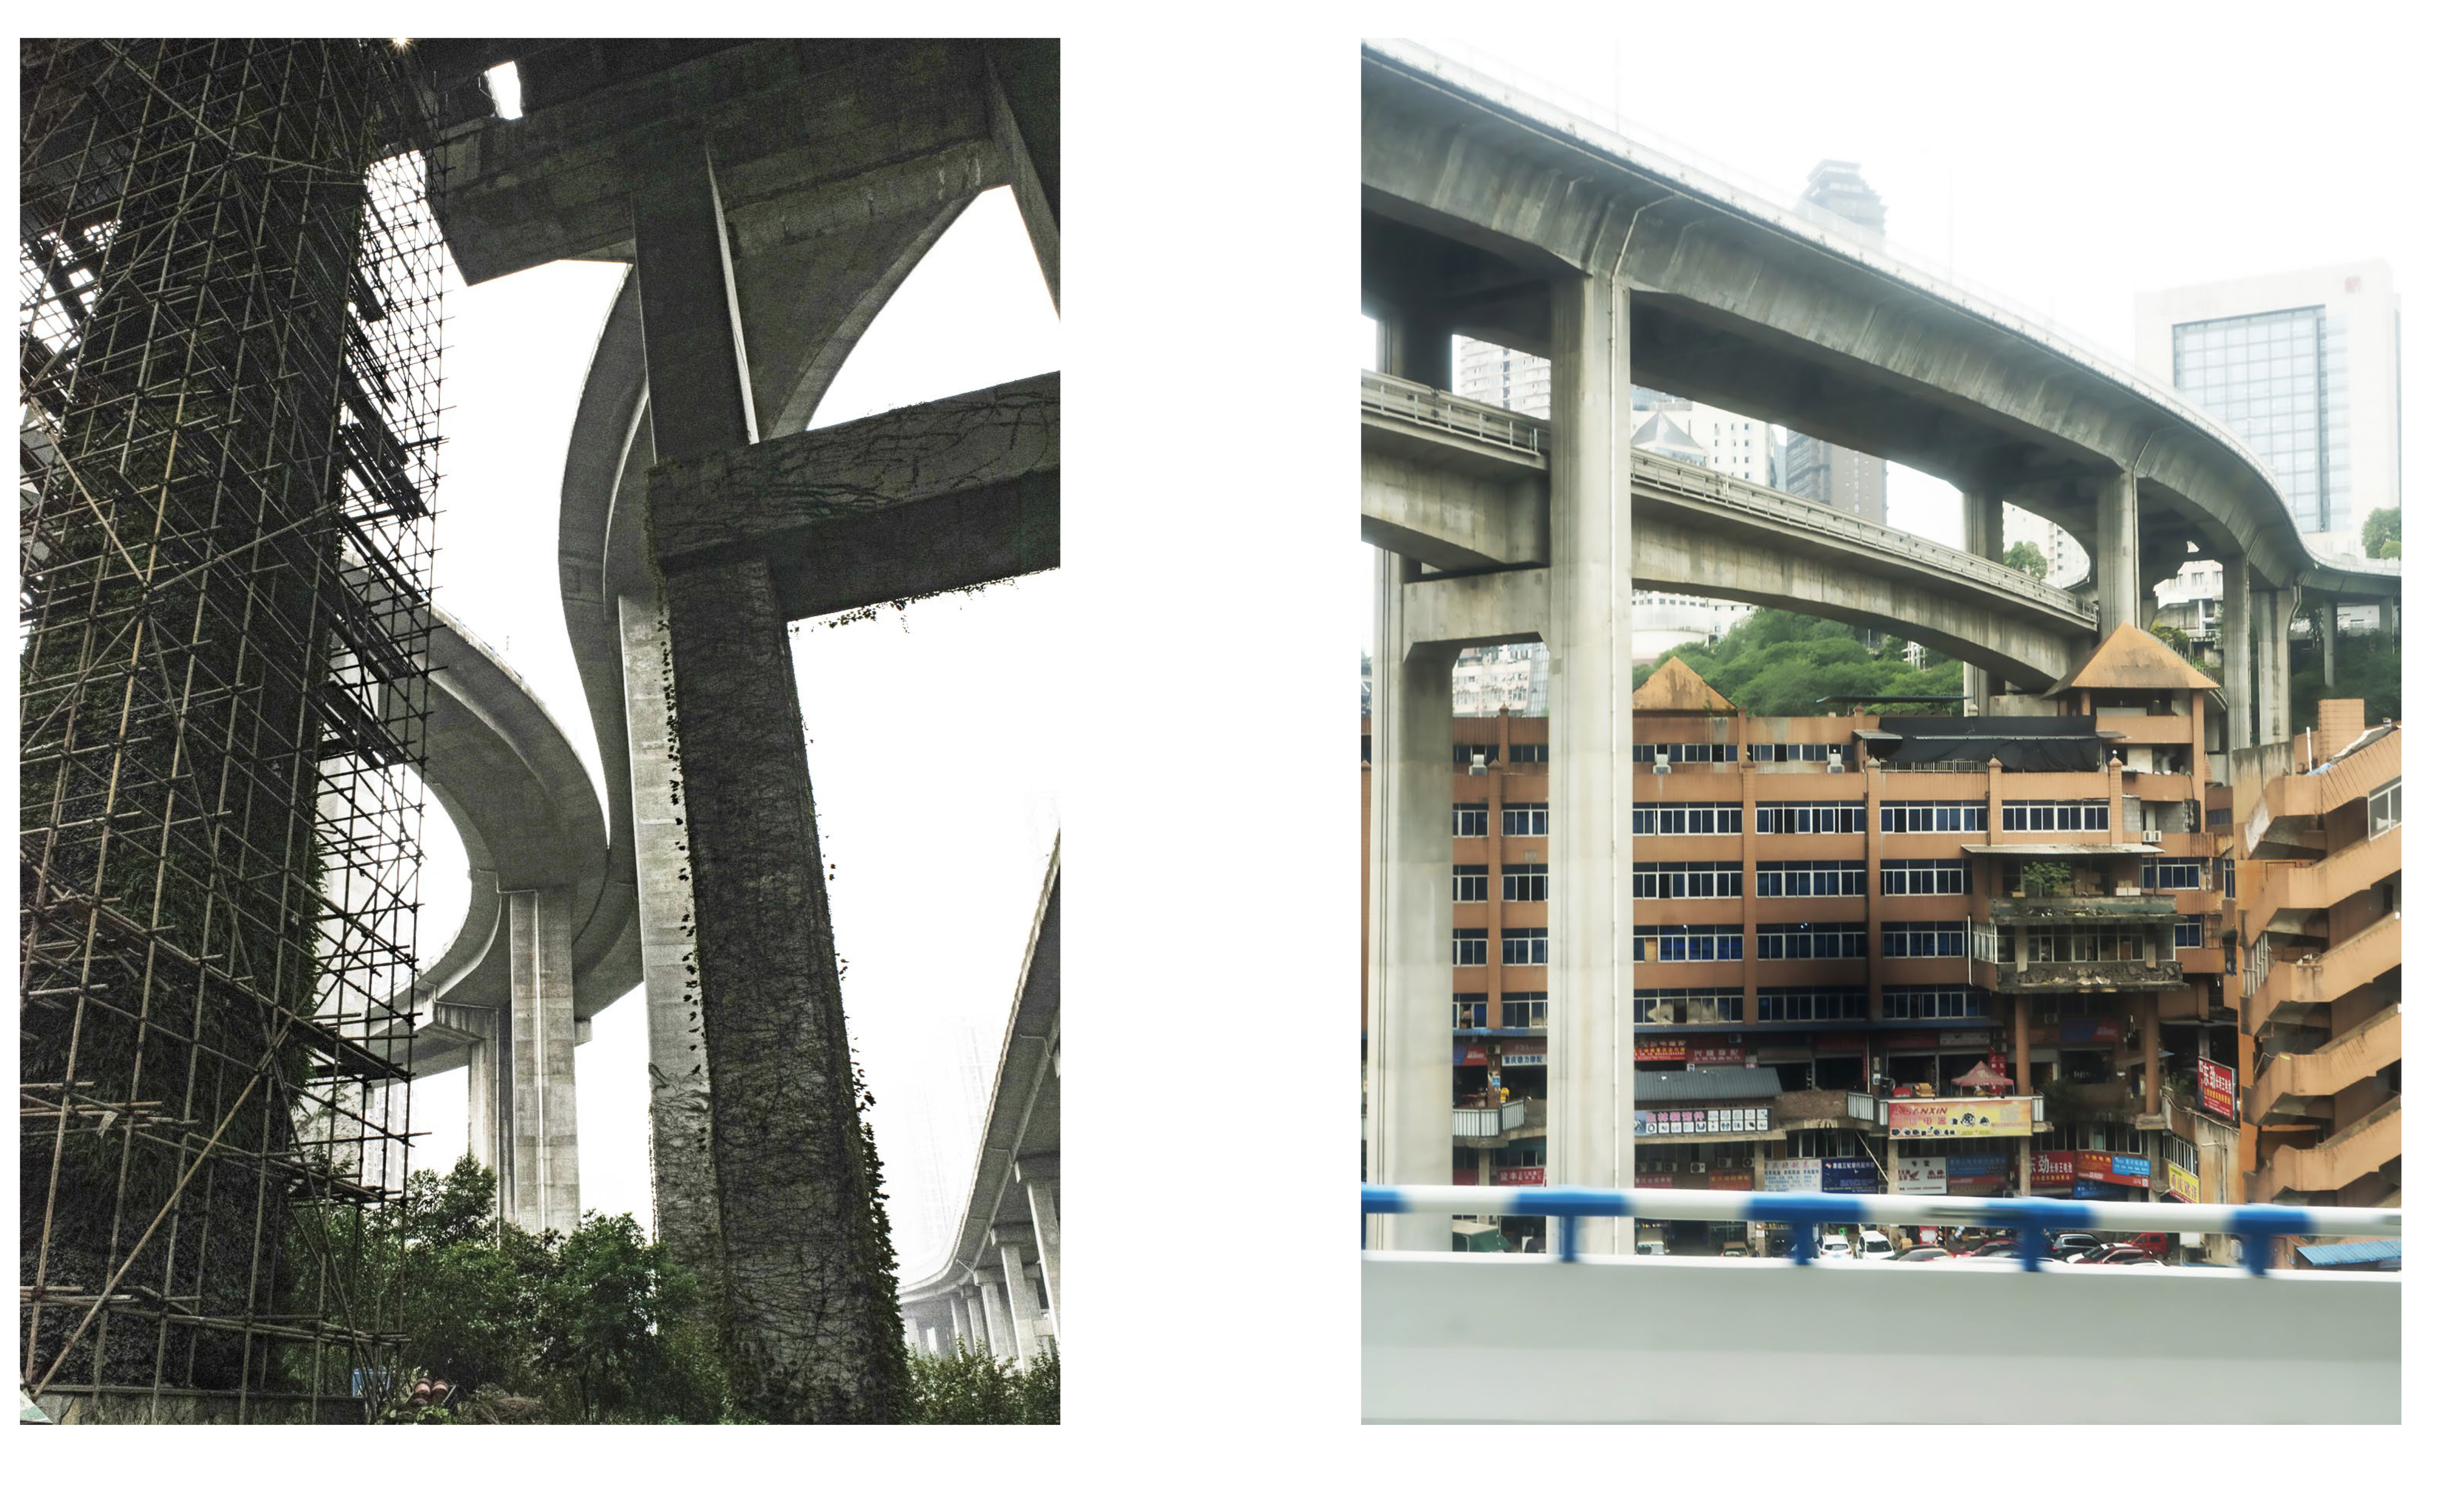 Under the Highway Bridge, Juilongo District and Building under City's infrastructure, Yuzhong Disctrict